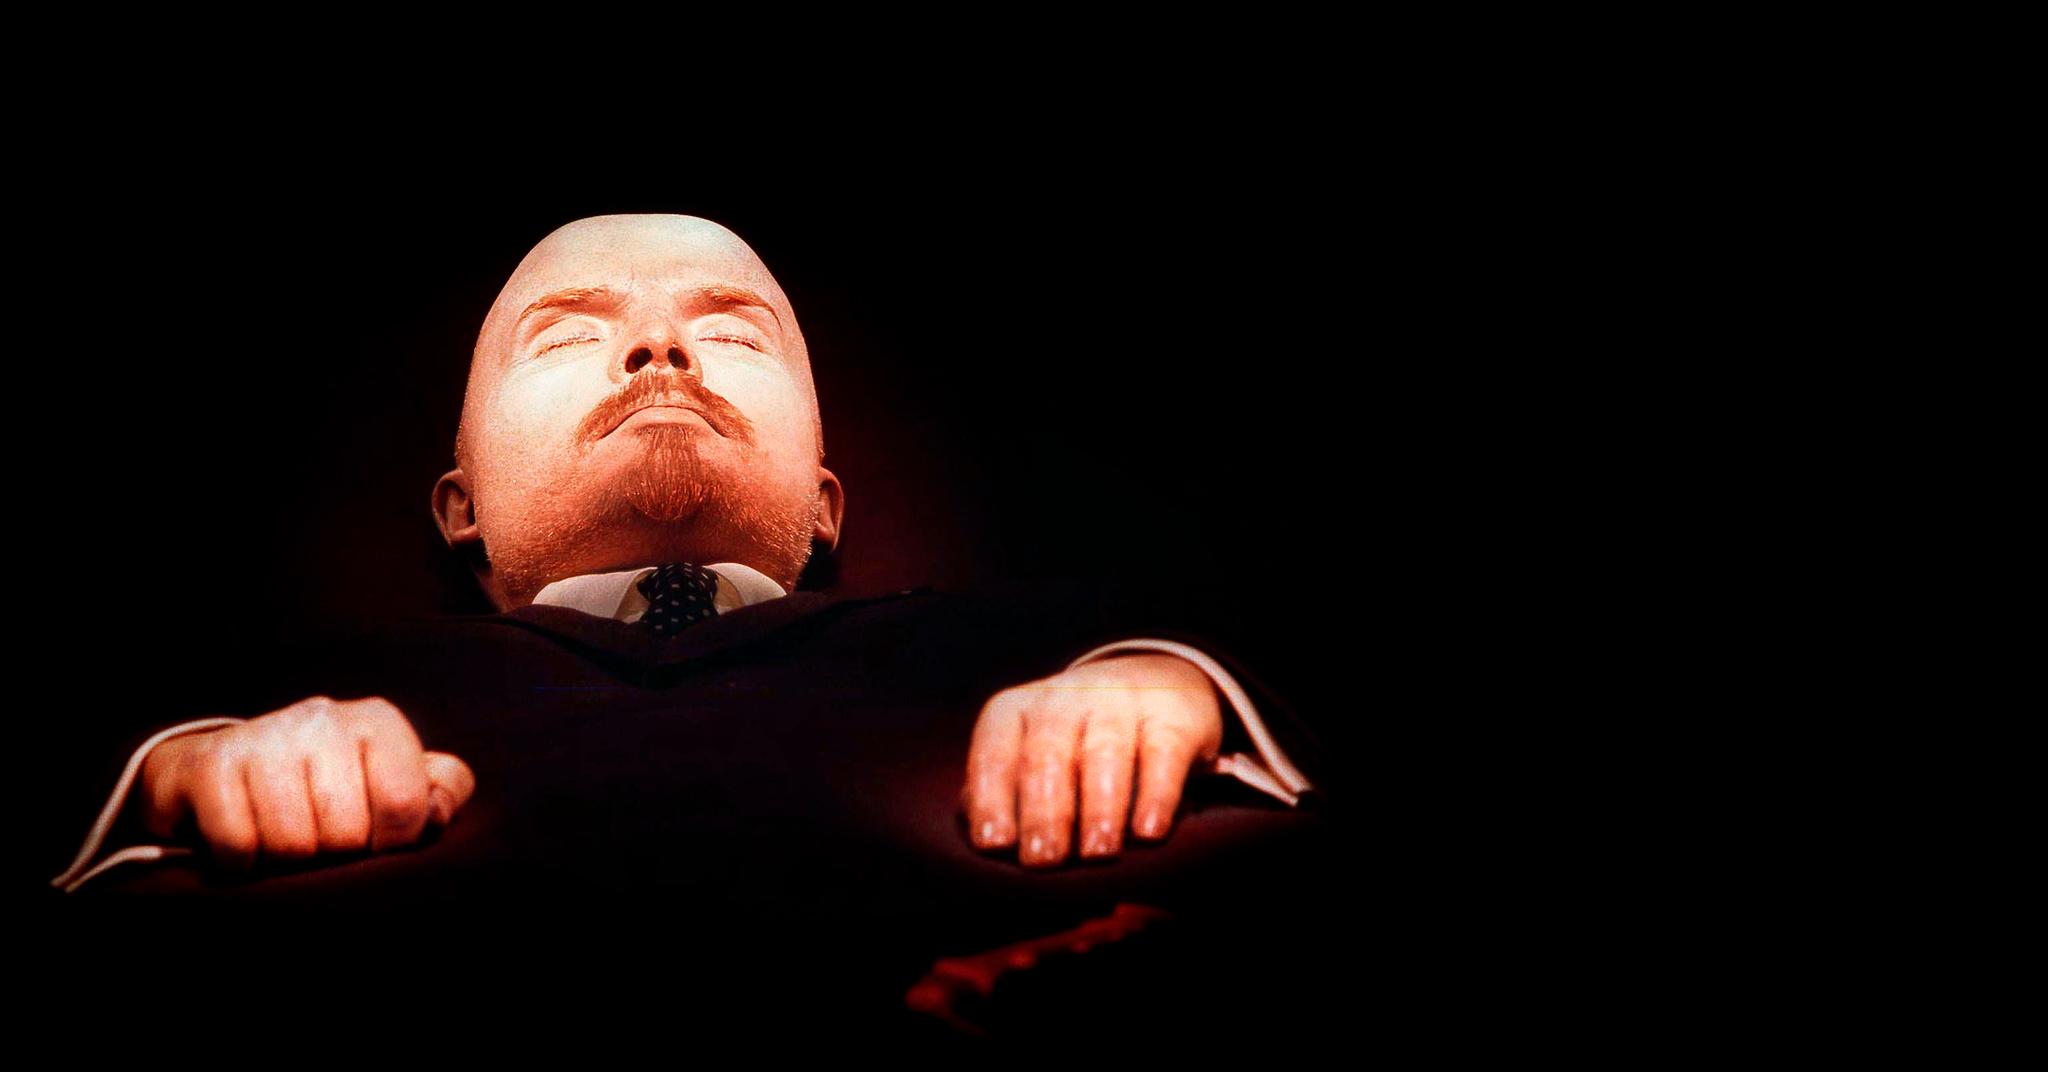 Sovjetunionens grunnlegger Vladimir Lenin ligger balsamert i et gravkammer på Den røde plass i Moskva. Her er han fotografert i 1997. Et team av eksperter sørger for at Lenin fremdeles er presentabel for de mange som kommer for å se liket av ham.